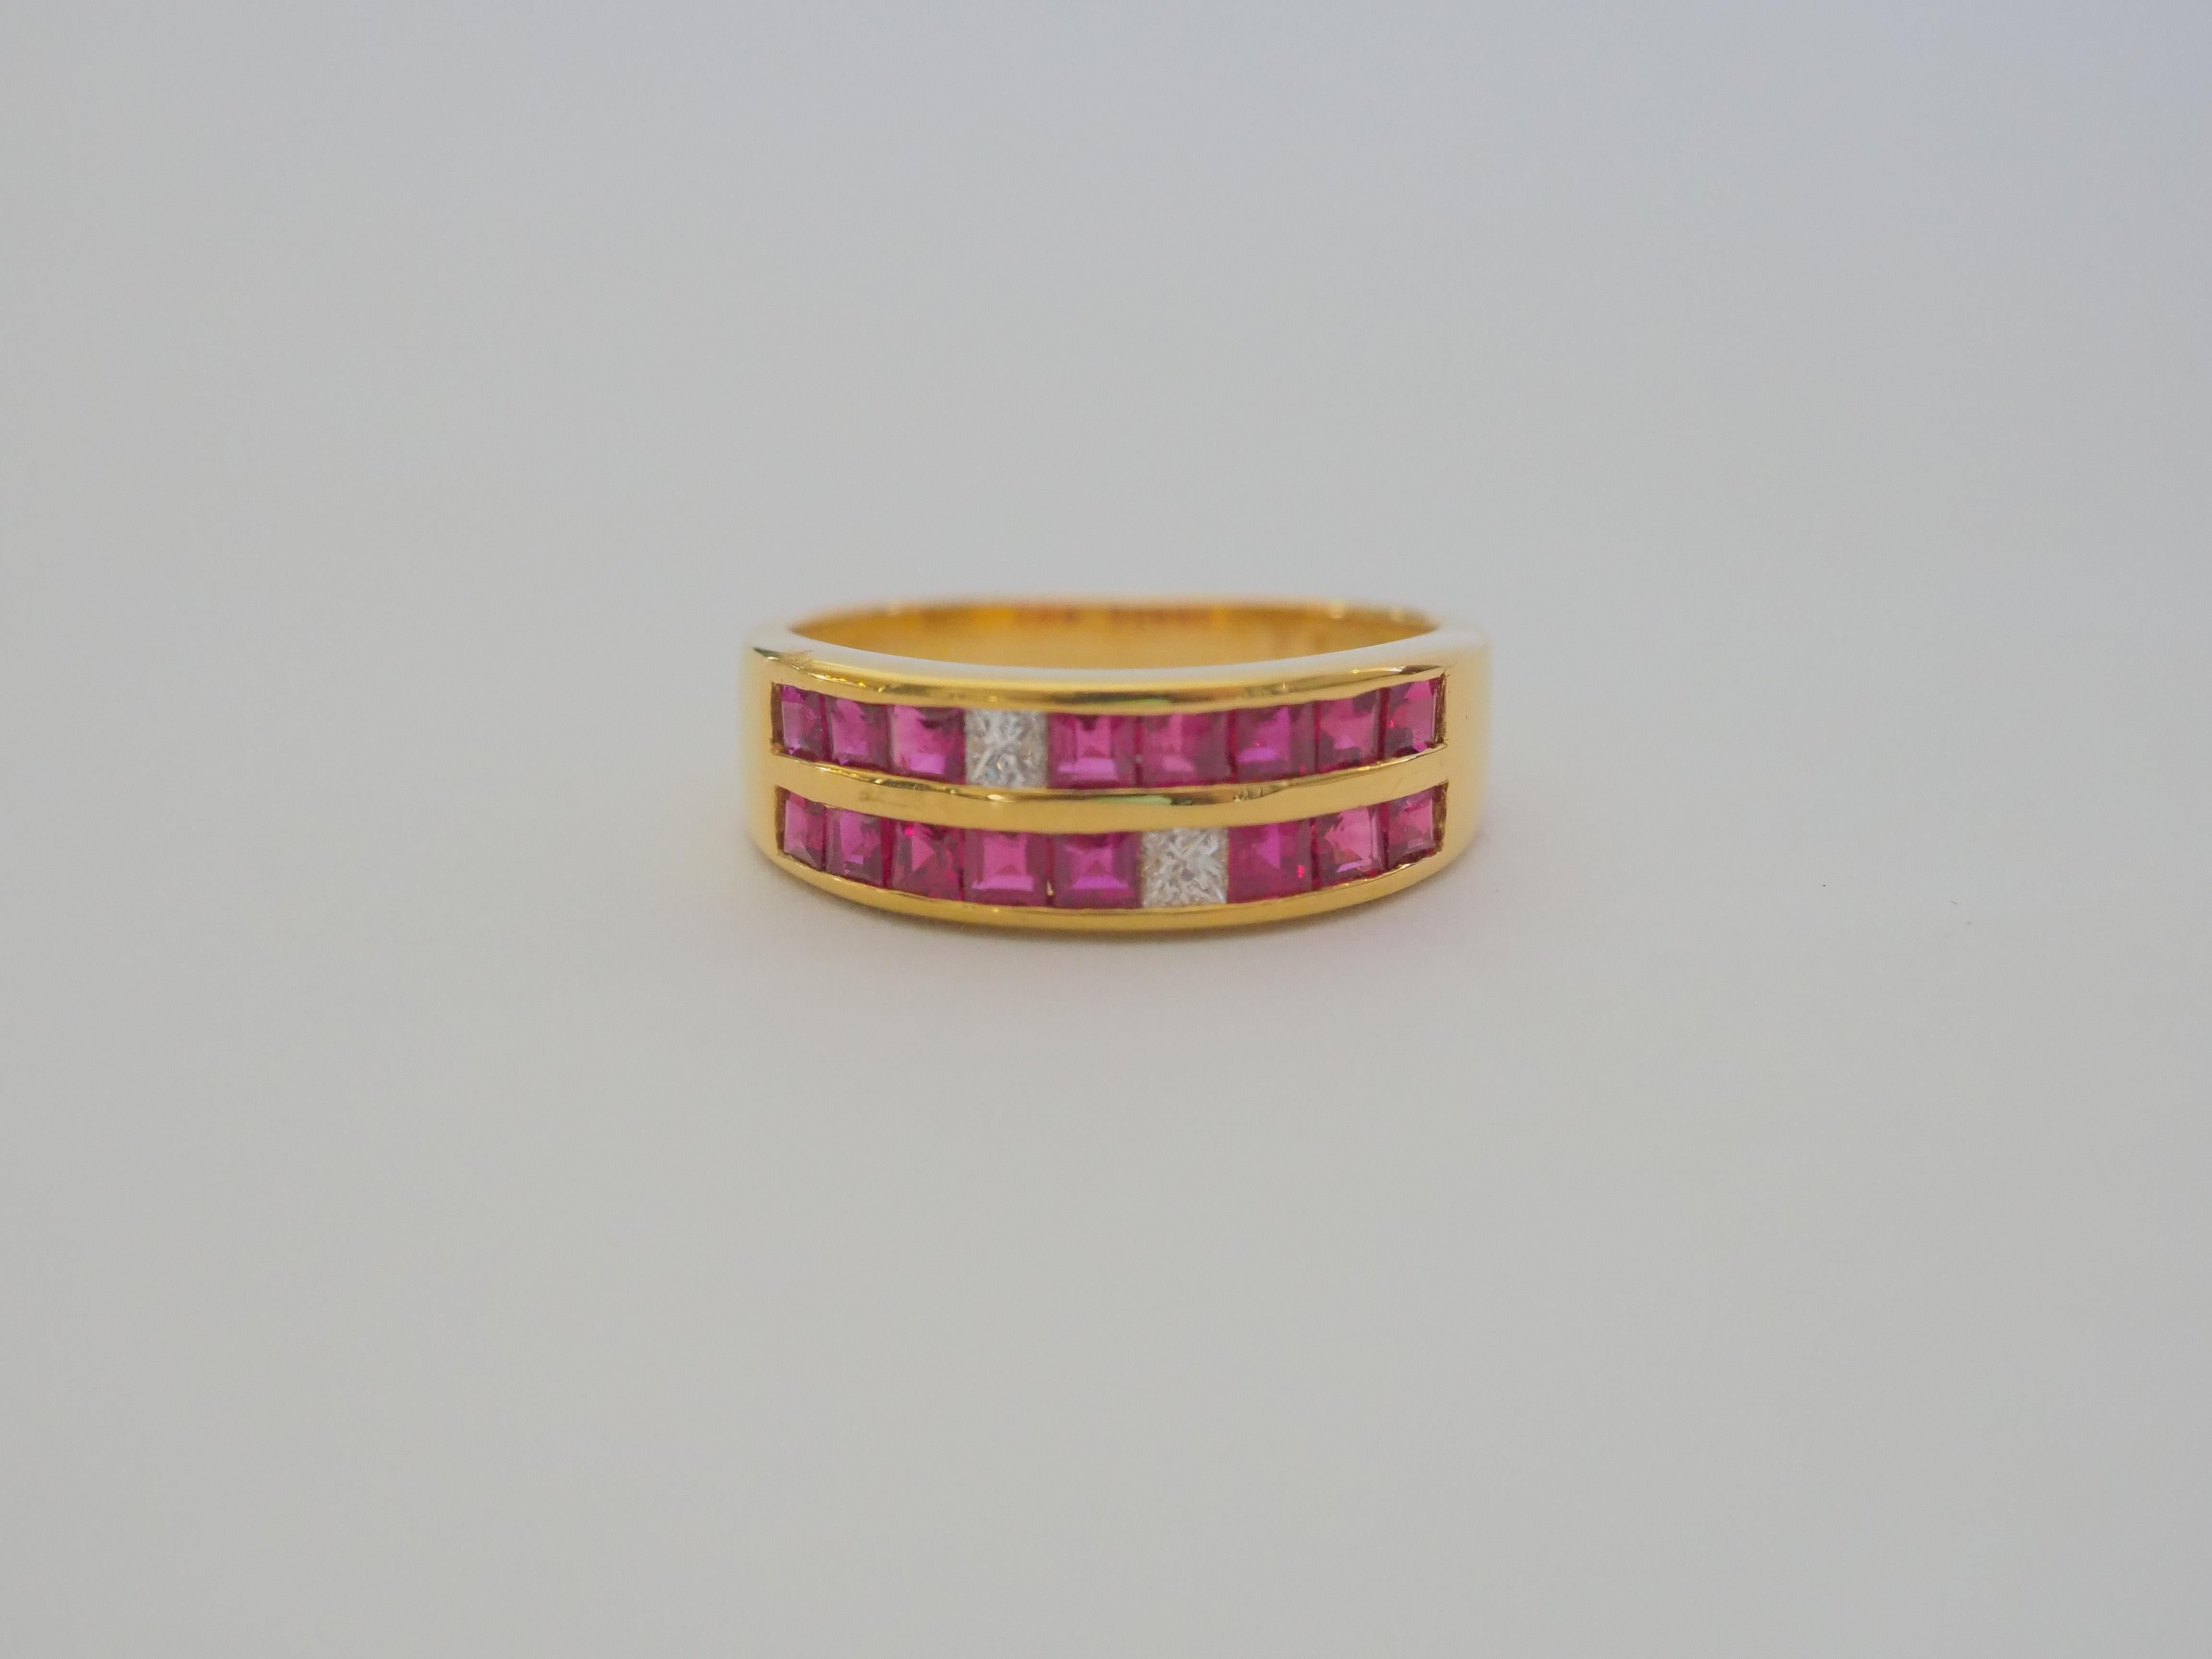 Ein wunderschöner, luxuriöser, klobiger Neo-Vintage-Ring, der für alle Geschlechter geeignet ist. Dieser Ring hat zwei Reihen schöner thailändischer Rubine und Princess-Diamanten, die schön in das Band eingelassen sind. Die quadratisch geschliffenen